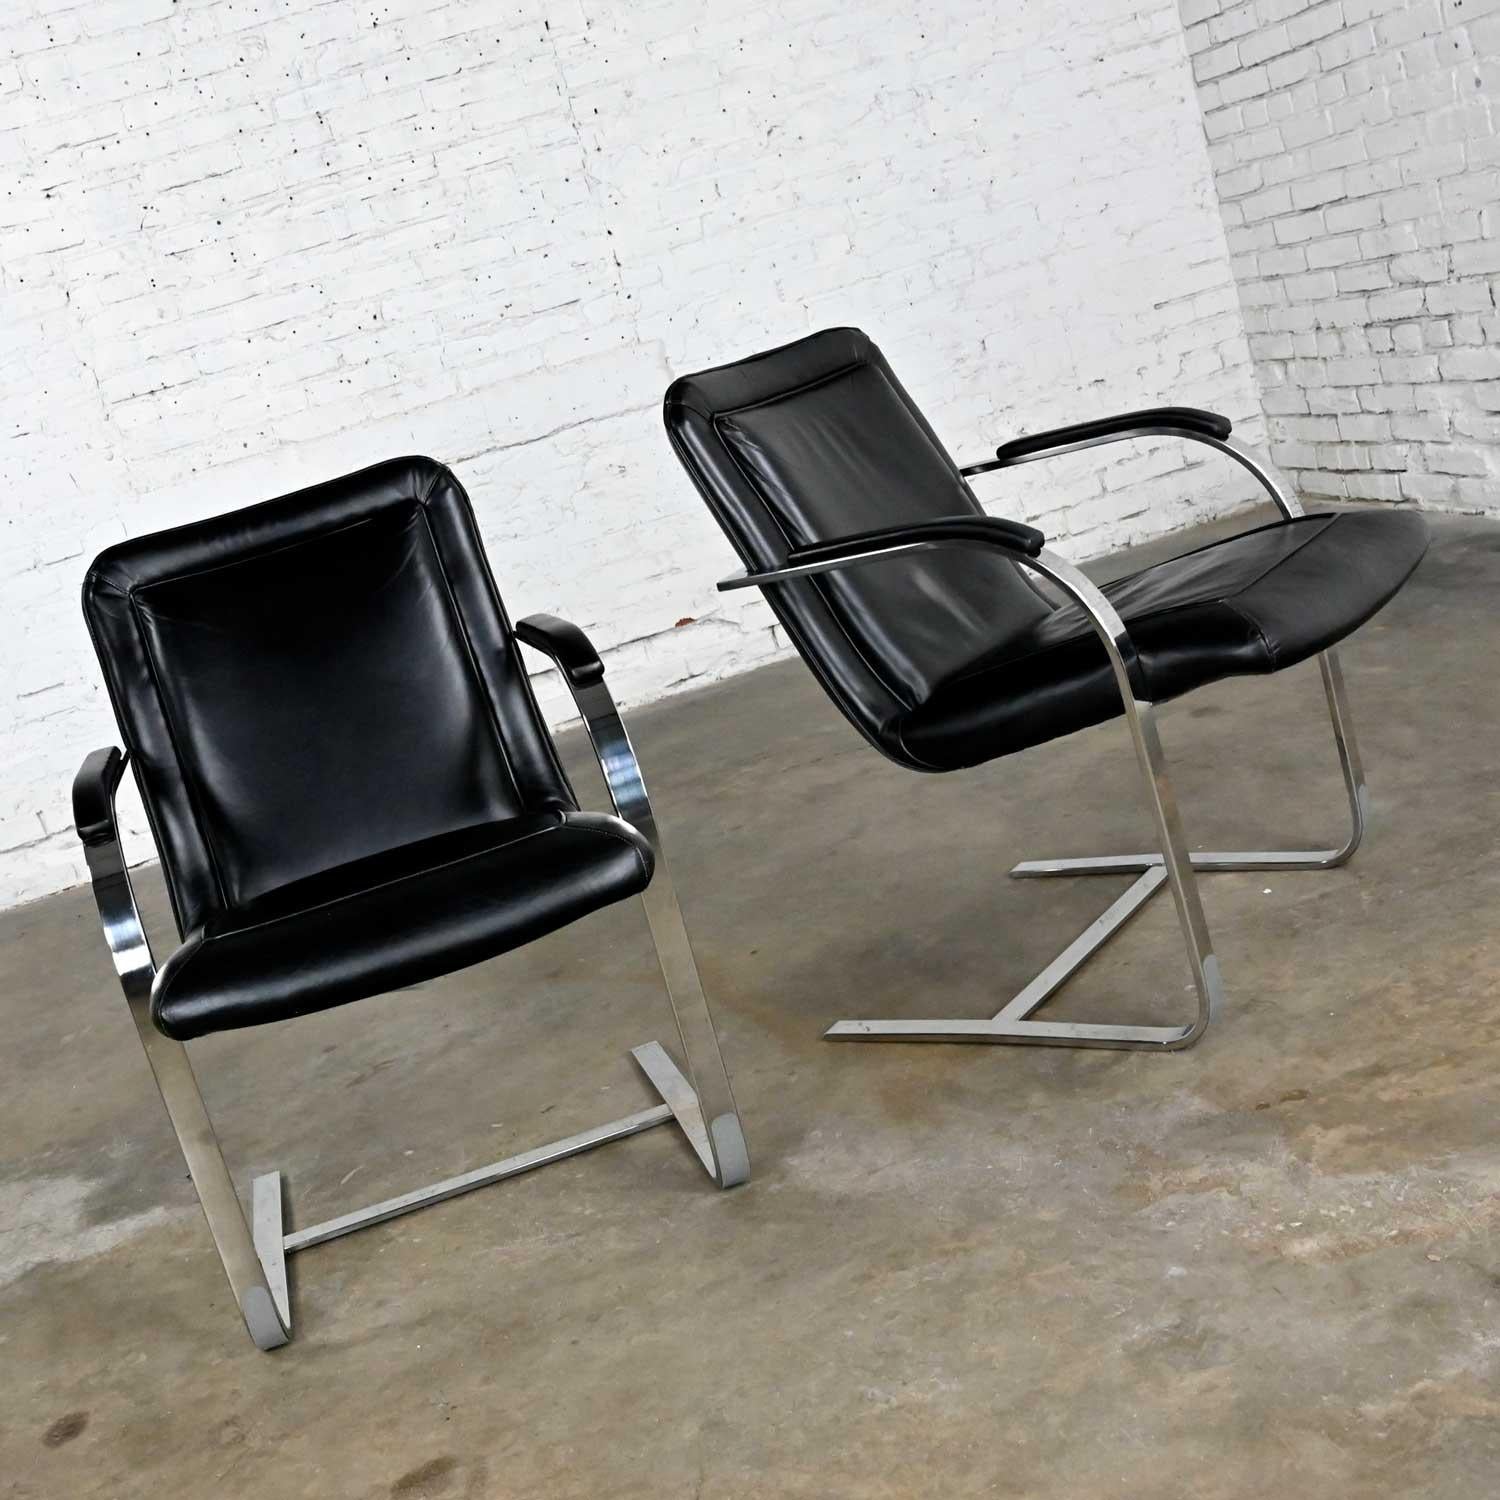 Merveilleuse paire de chaises cantilever modernes St. Timothy Chair Company en tube rectangulaire chromé et cuir noir. Belle condition, en gardant à l'esprit qu'il s'agit d'un produit vintage et non pas neuf, donc il y aura des signes d'utilisation